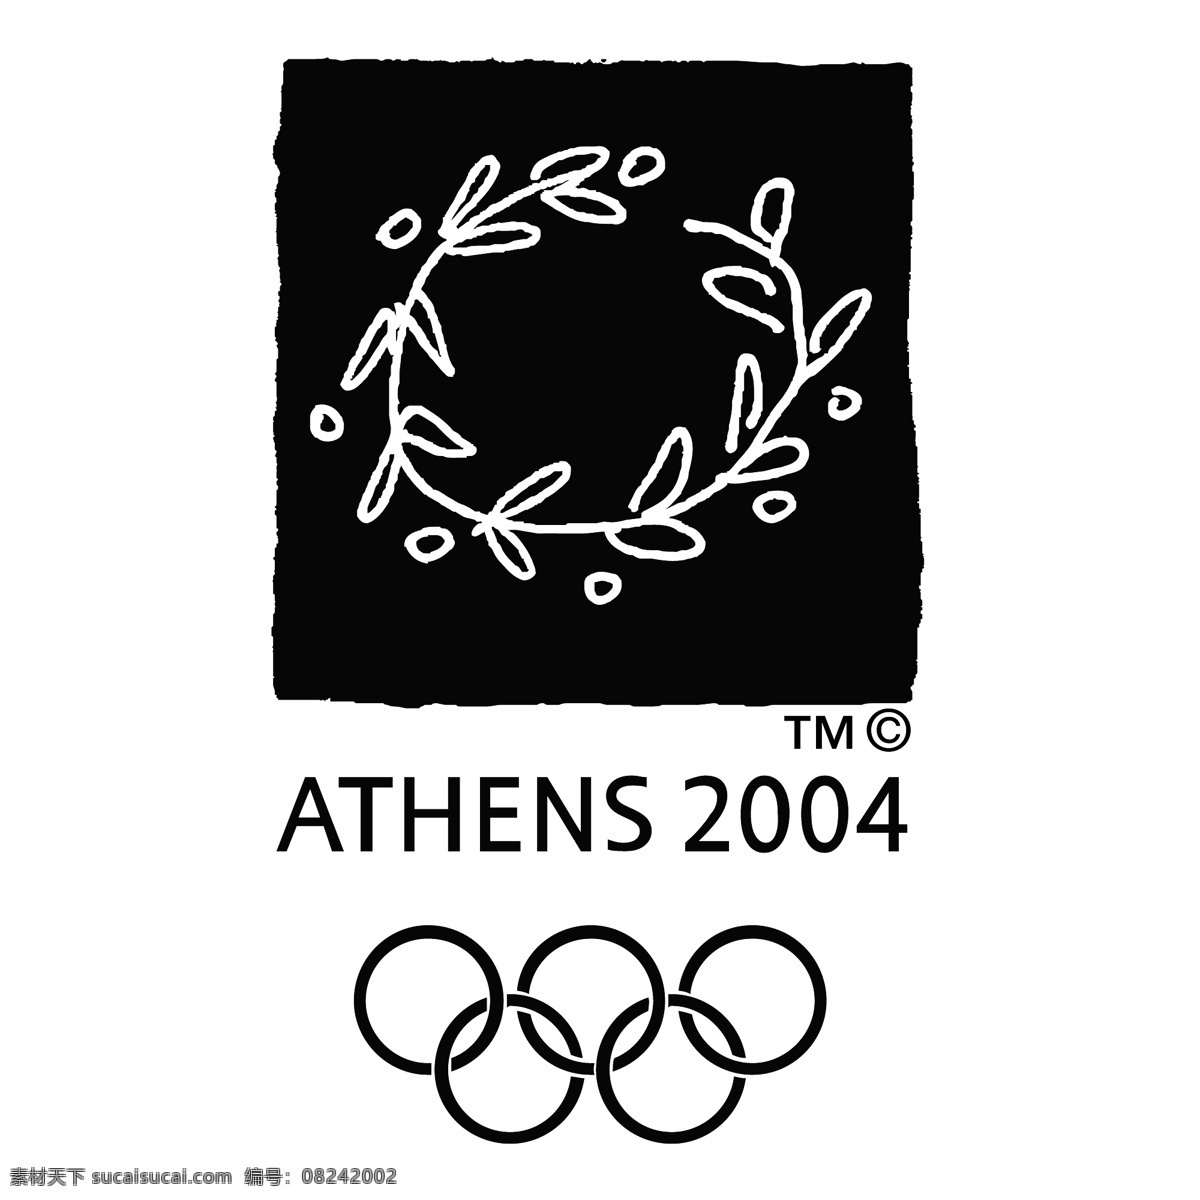 2004 雅典 奥运会 矢量图 其他矢量图